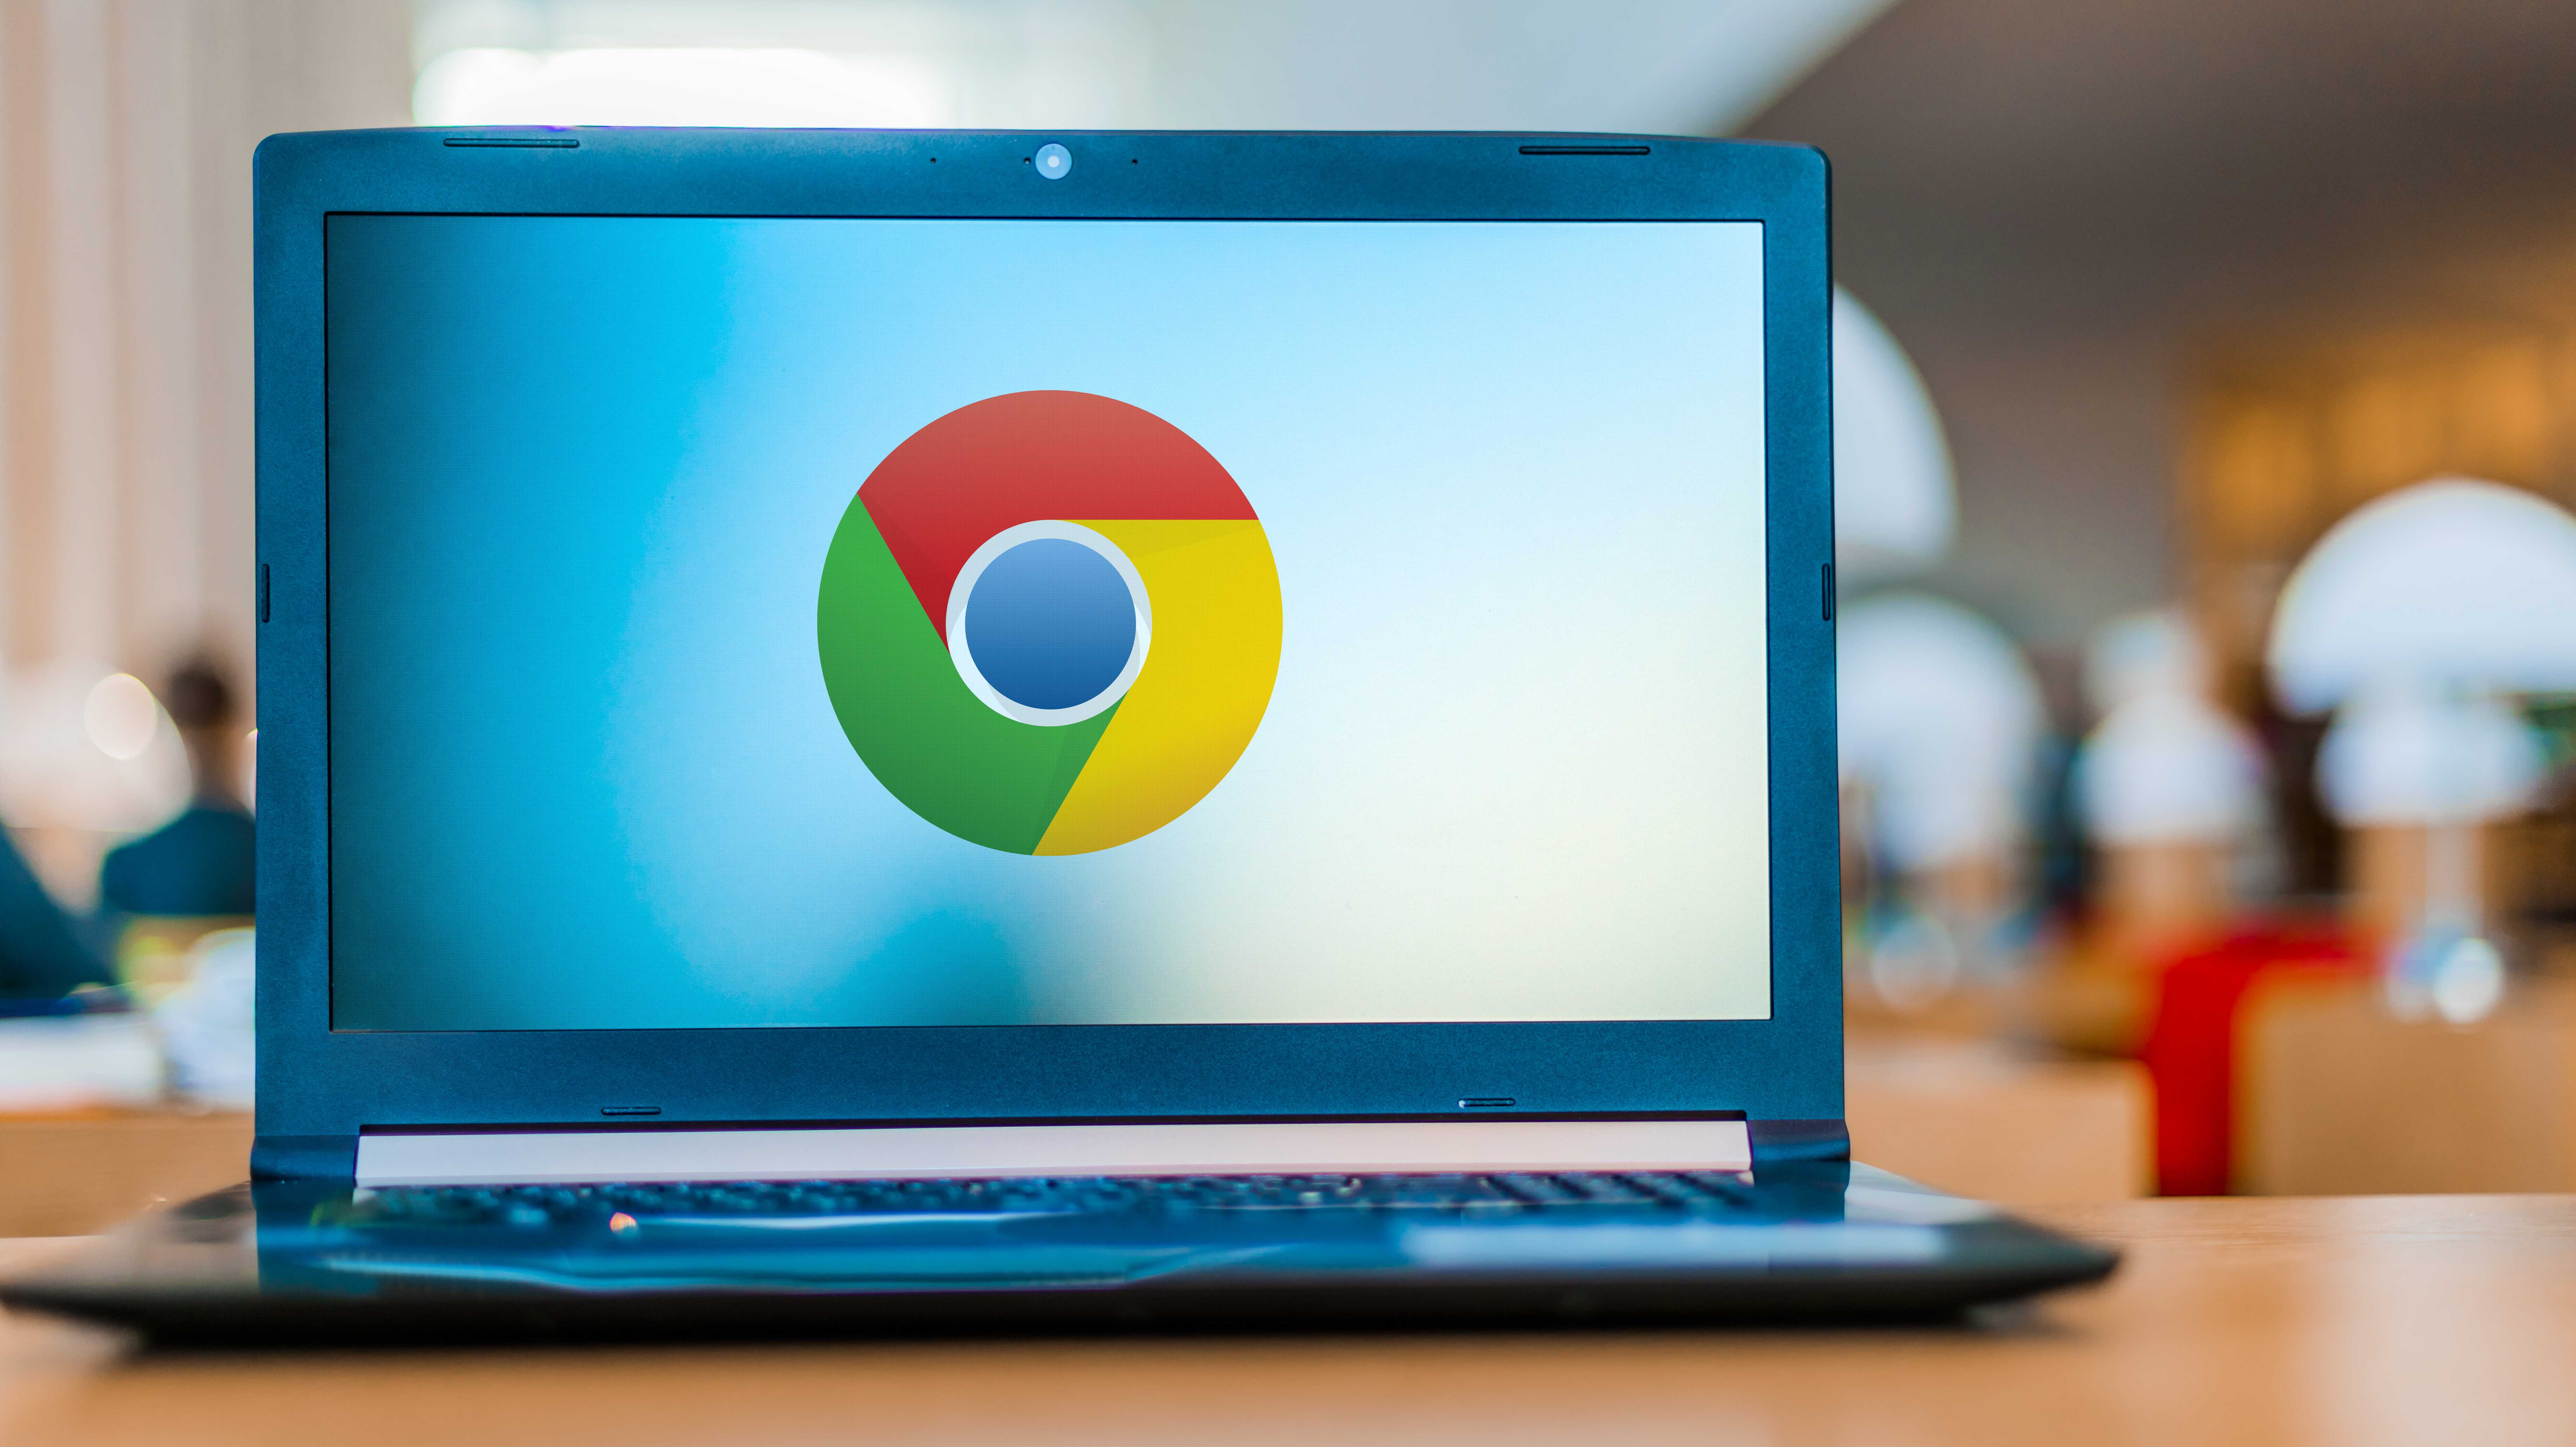 Augeklappter Laptop, das Chrome-Logo zeigend